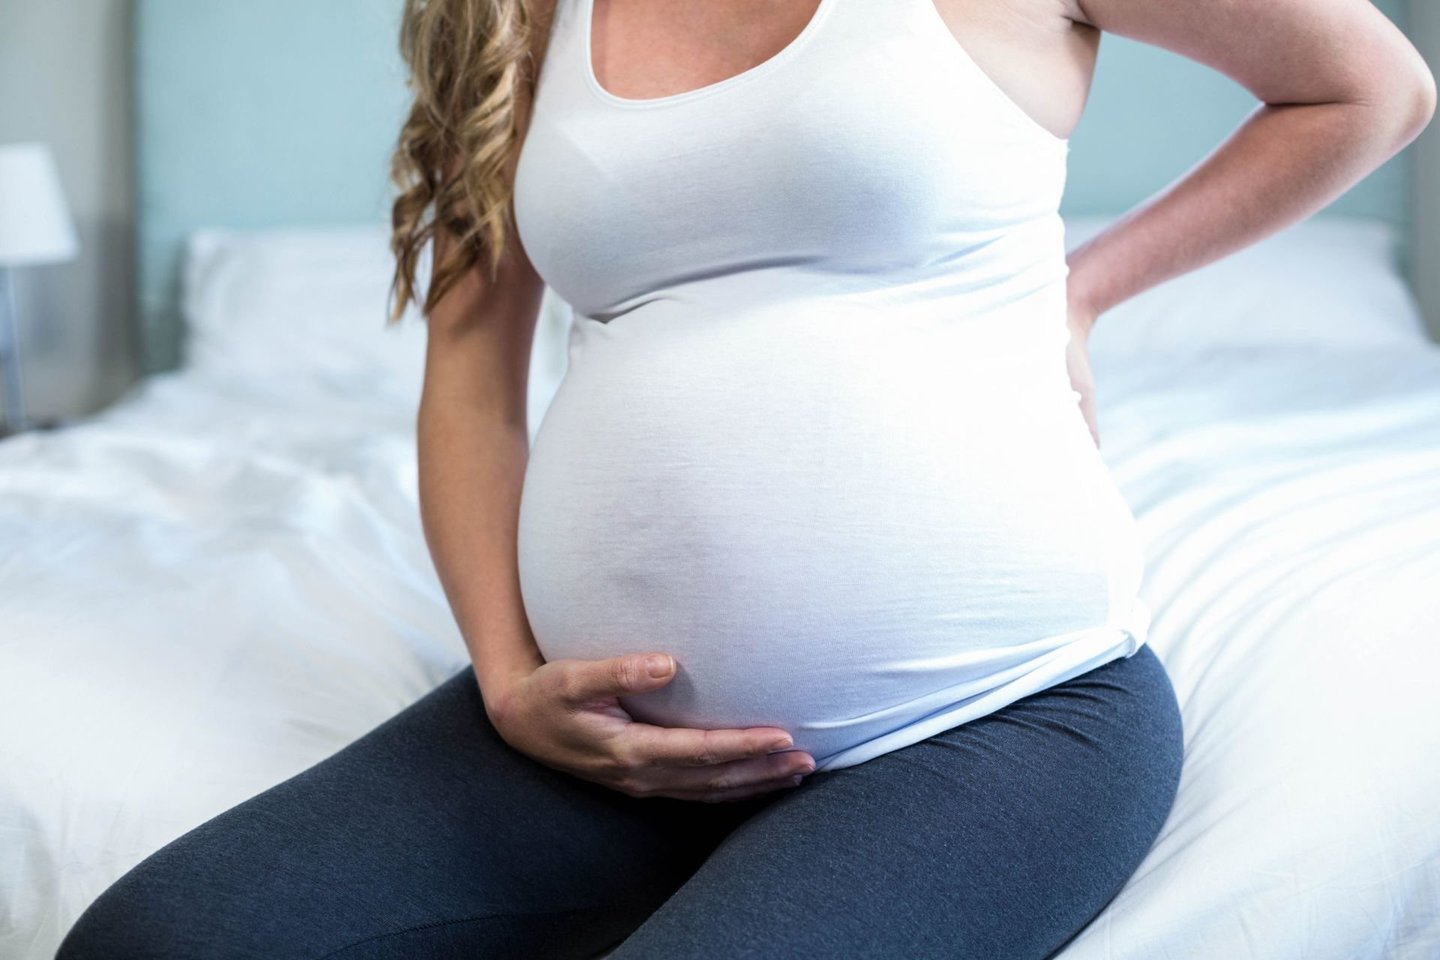  Nėštumo metu moters organizmas išgyvena įvairiausius pokyčius, kurie dažnai užklumpa visai nepasiruošus.<br> 123rf.com nuotr.